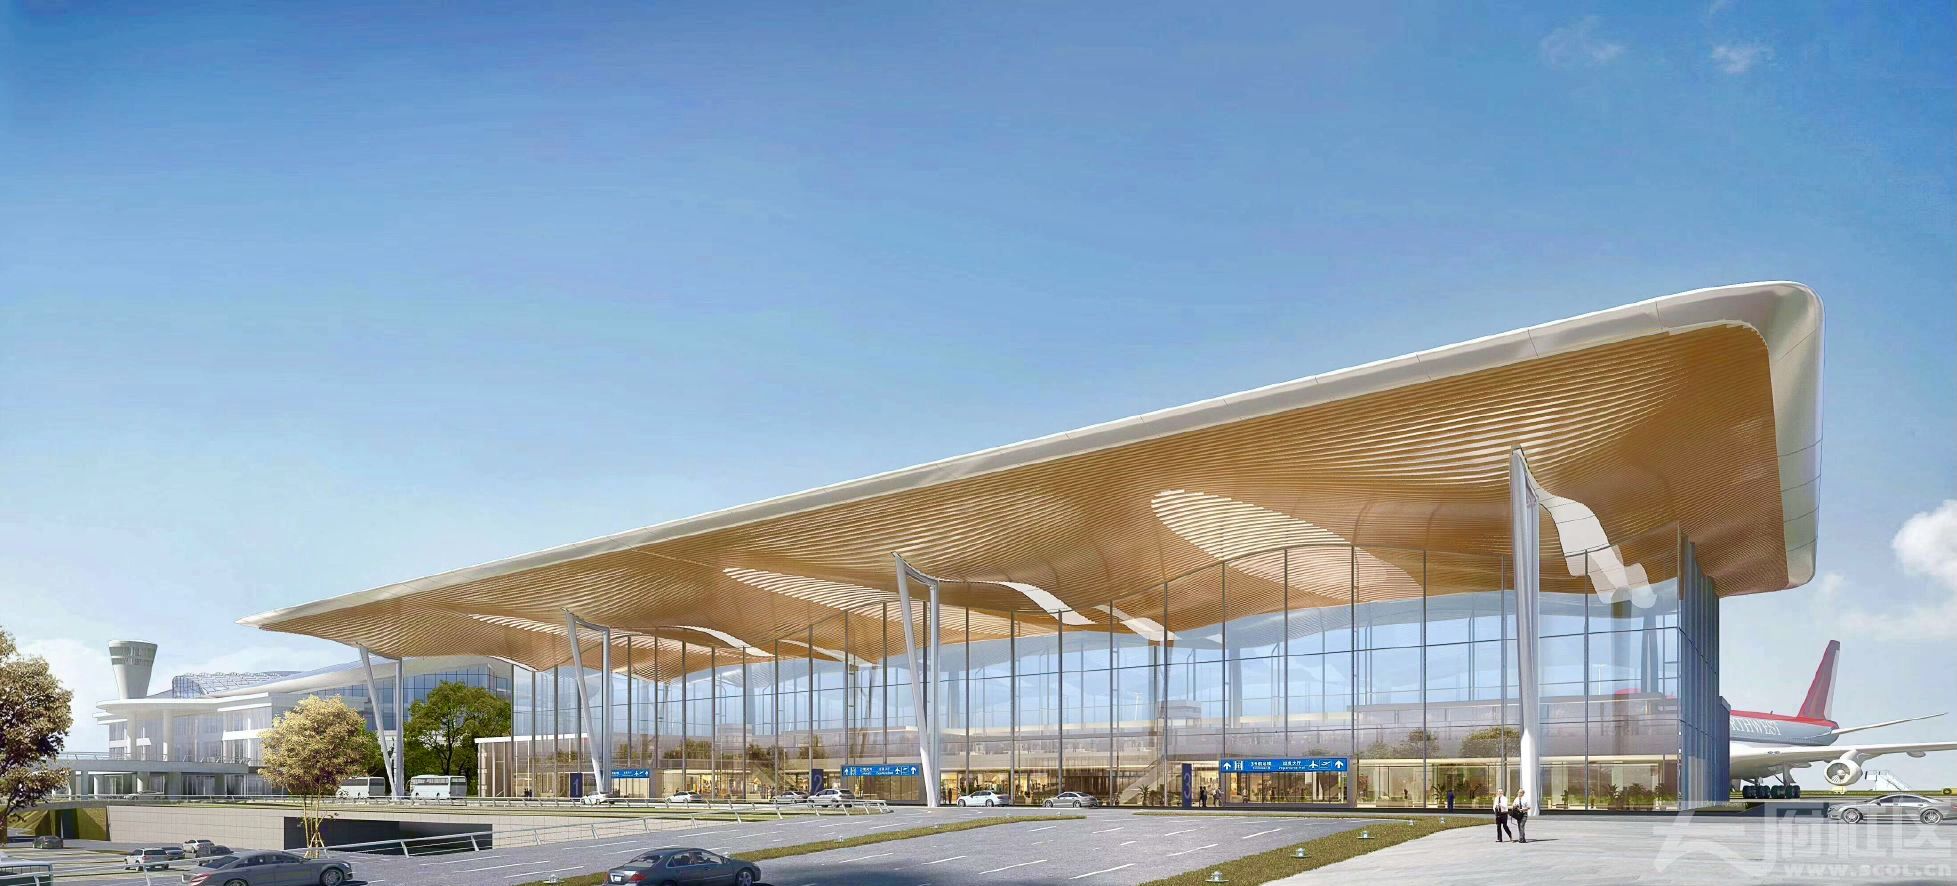 绵阳机场t2航站楼登机廊桥开始招标,4座廊桥2021年8月完成建设安装!